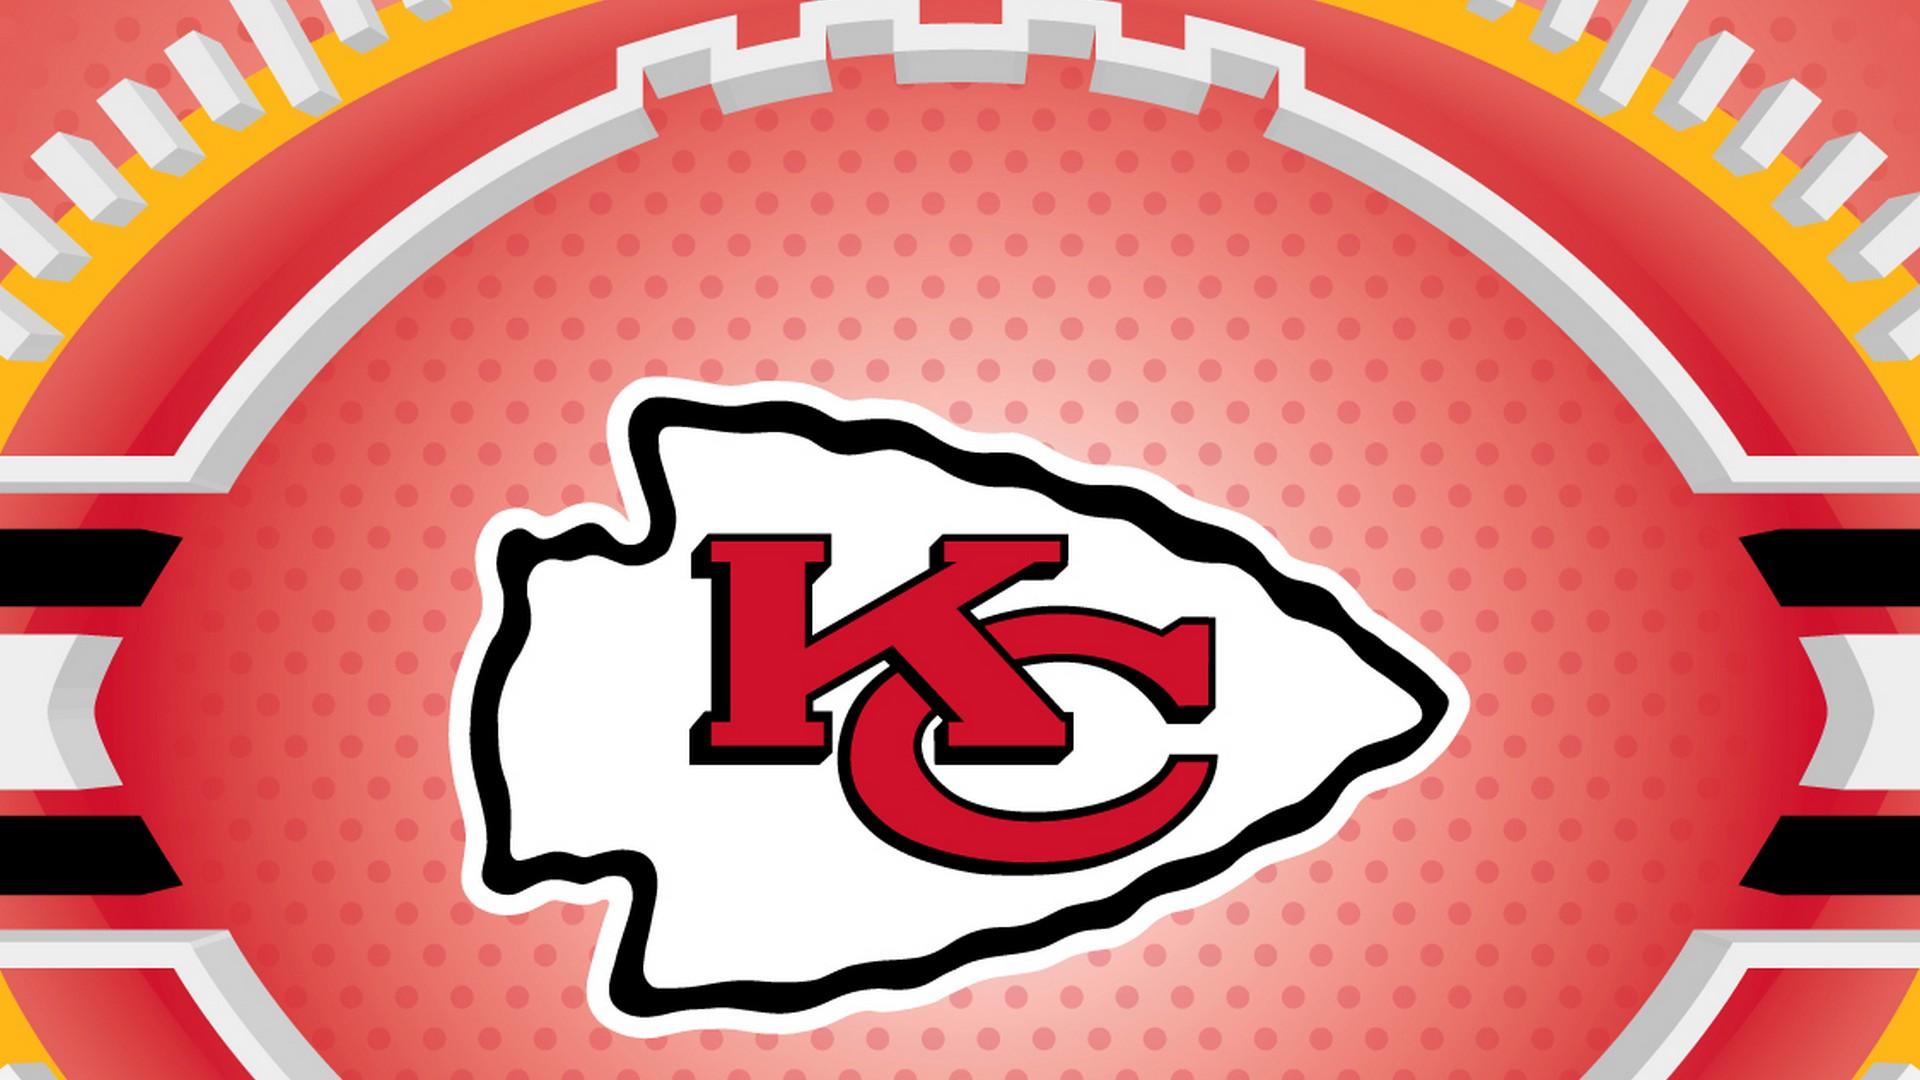 Kansas City Chiefs For PC Wallpaper NFL Football Wallpaper